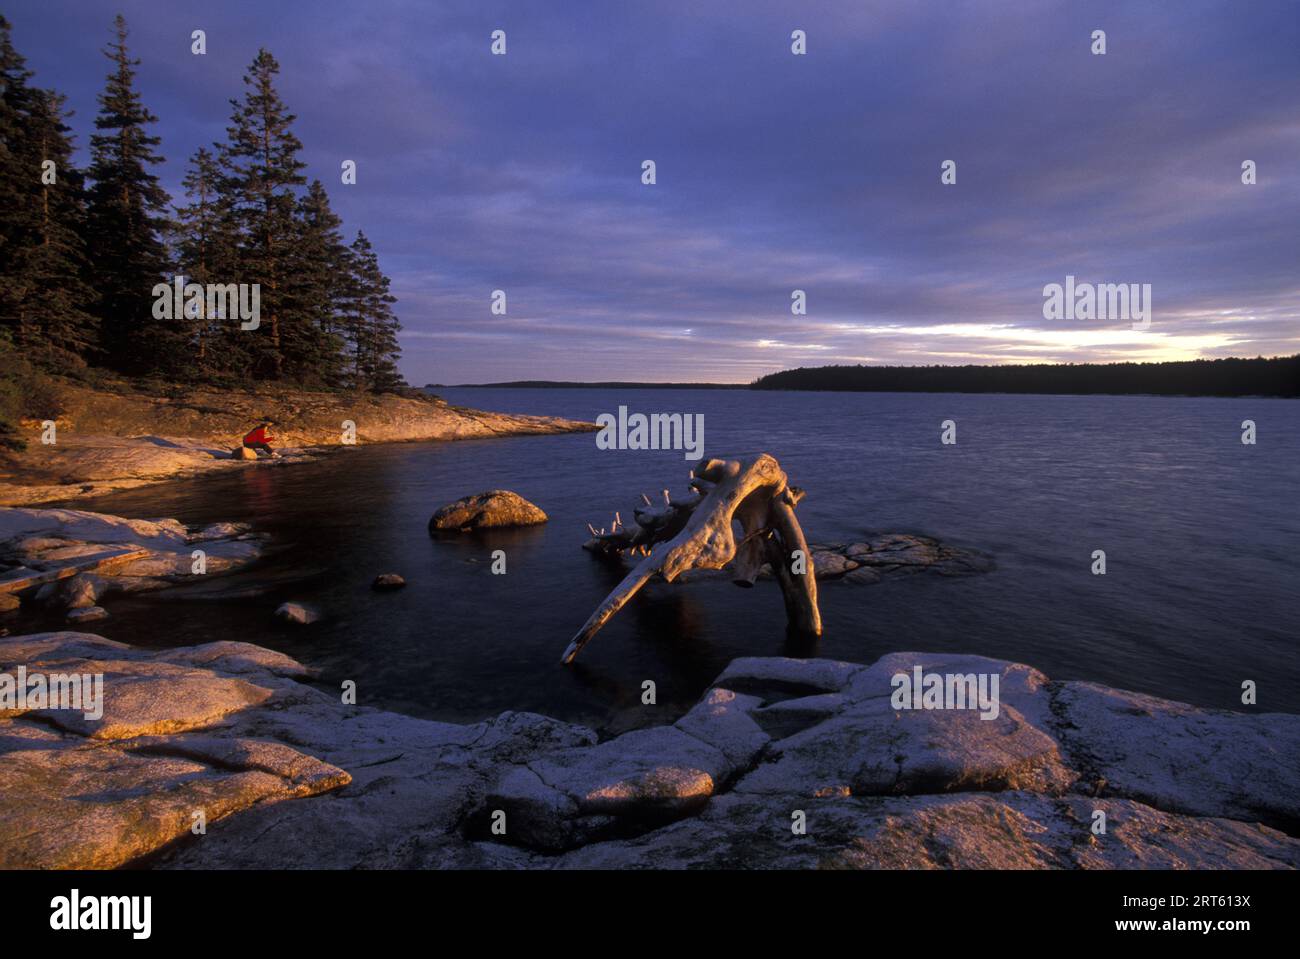 Un randonneur solitaire voit le coucher de soleil depuis l'île de Theif, Muscongus Bay, Maine. Banque D'Images